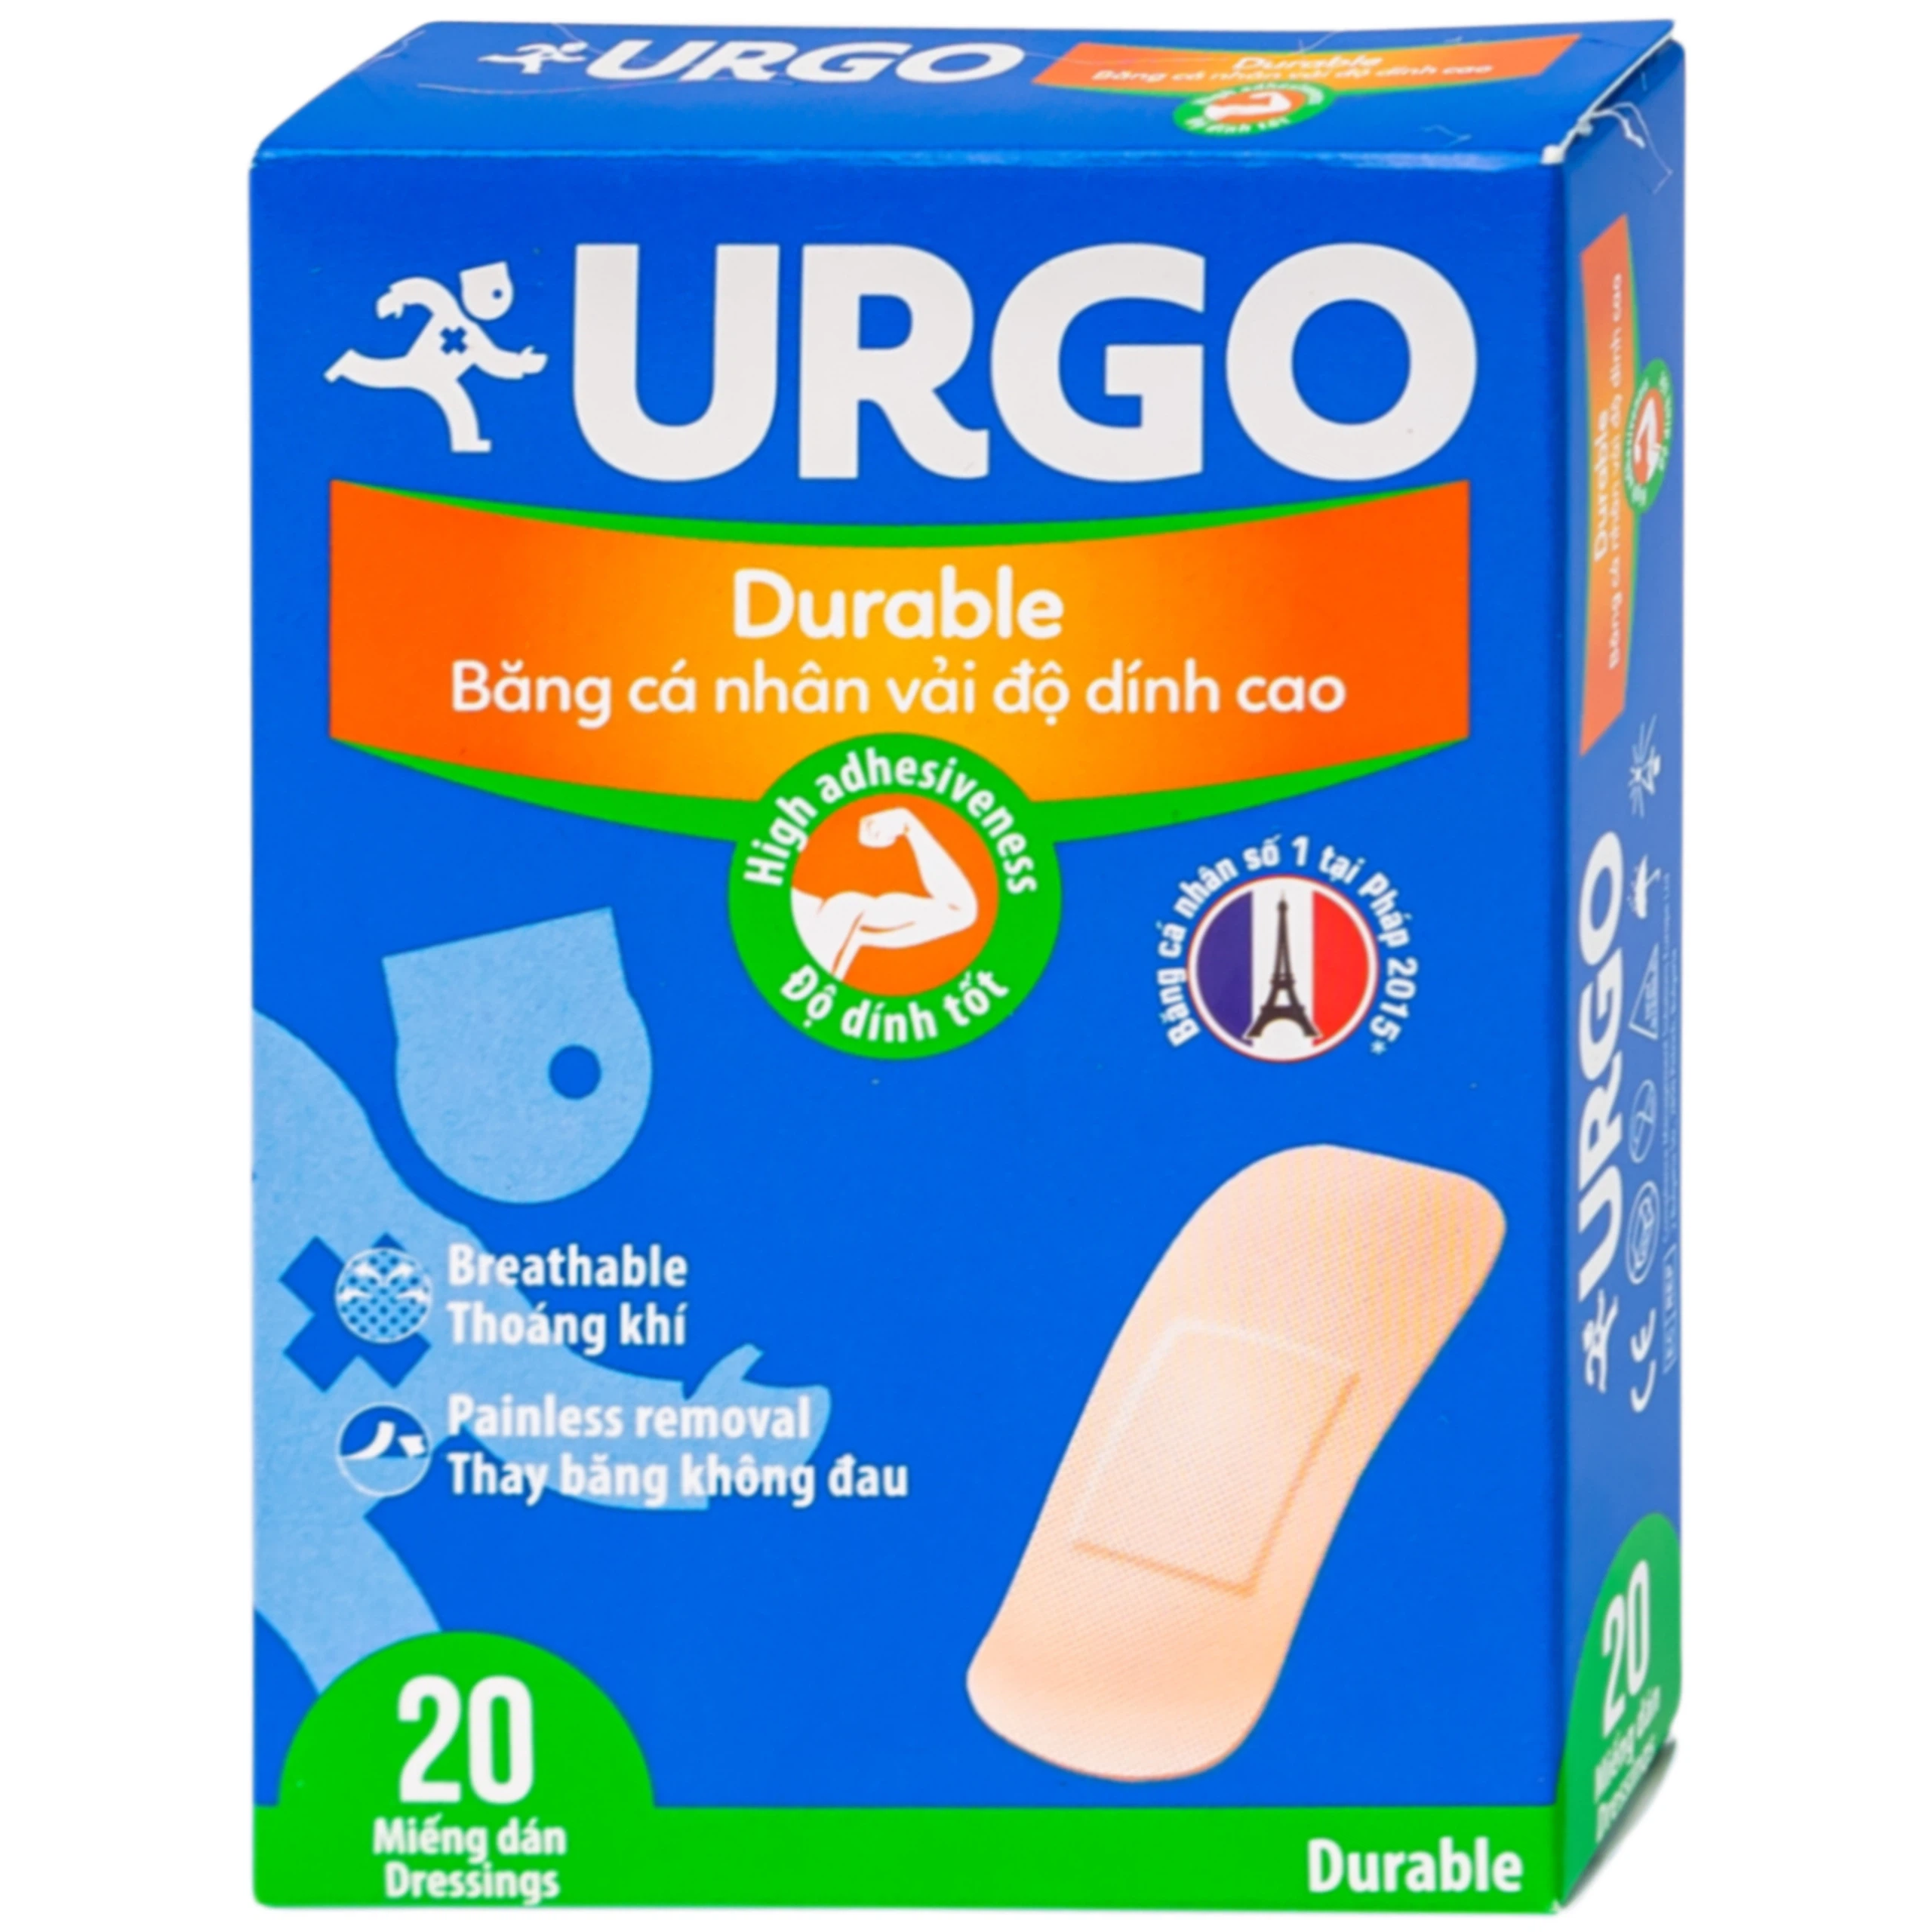 Băng cá nhân vải độ dính cao Urgo Durable size 2cm x 6cm bảo vệ các vết thương nhỏ, vết trầy xước, rách da (20 miếng)  